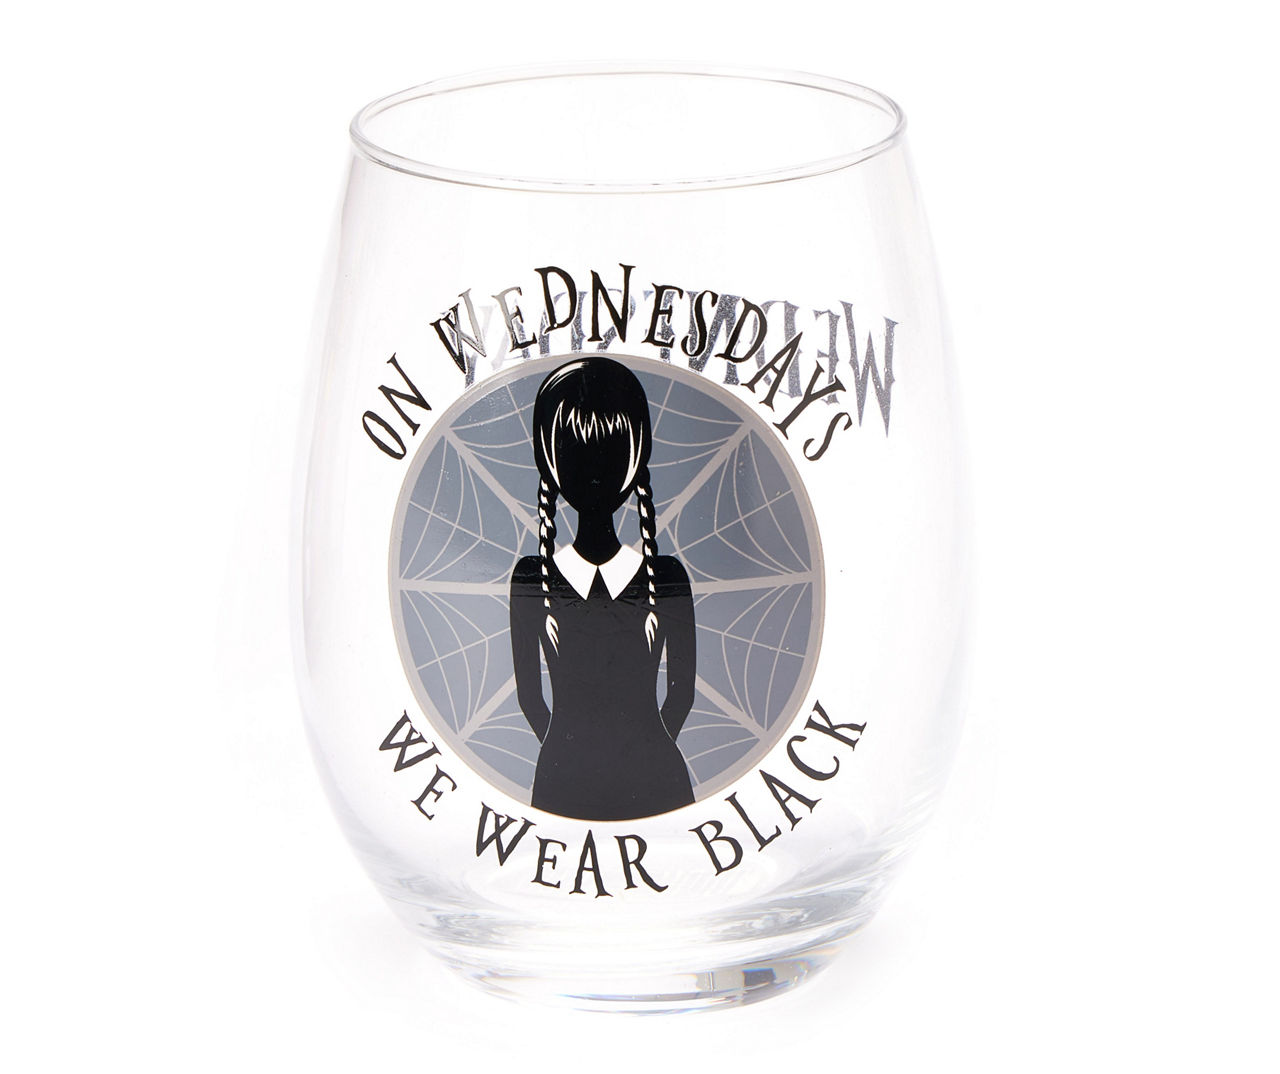 Wednesday We Wear Black Stemless Wineglass, 20 oz.